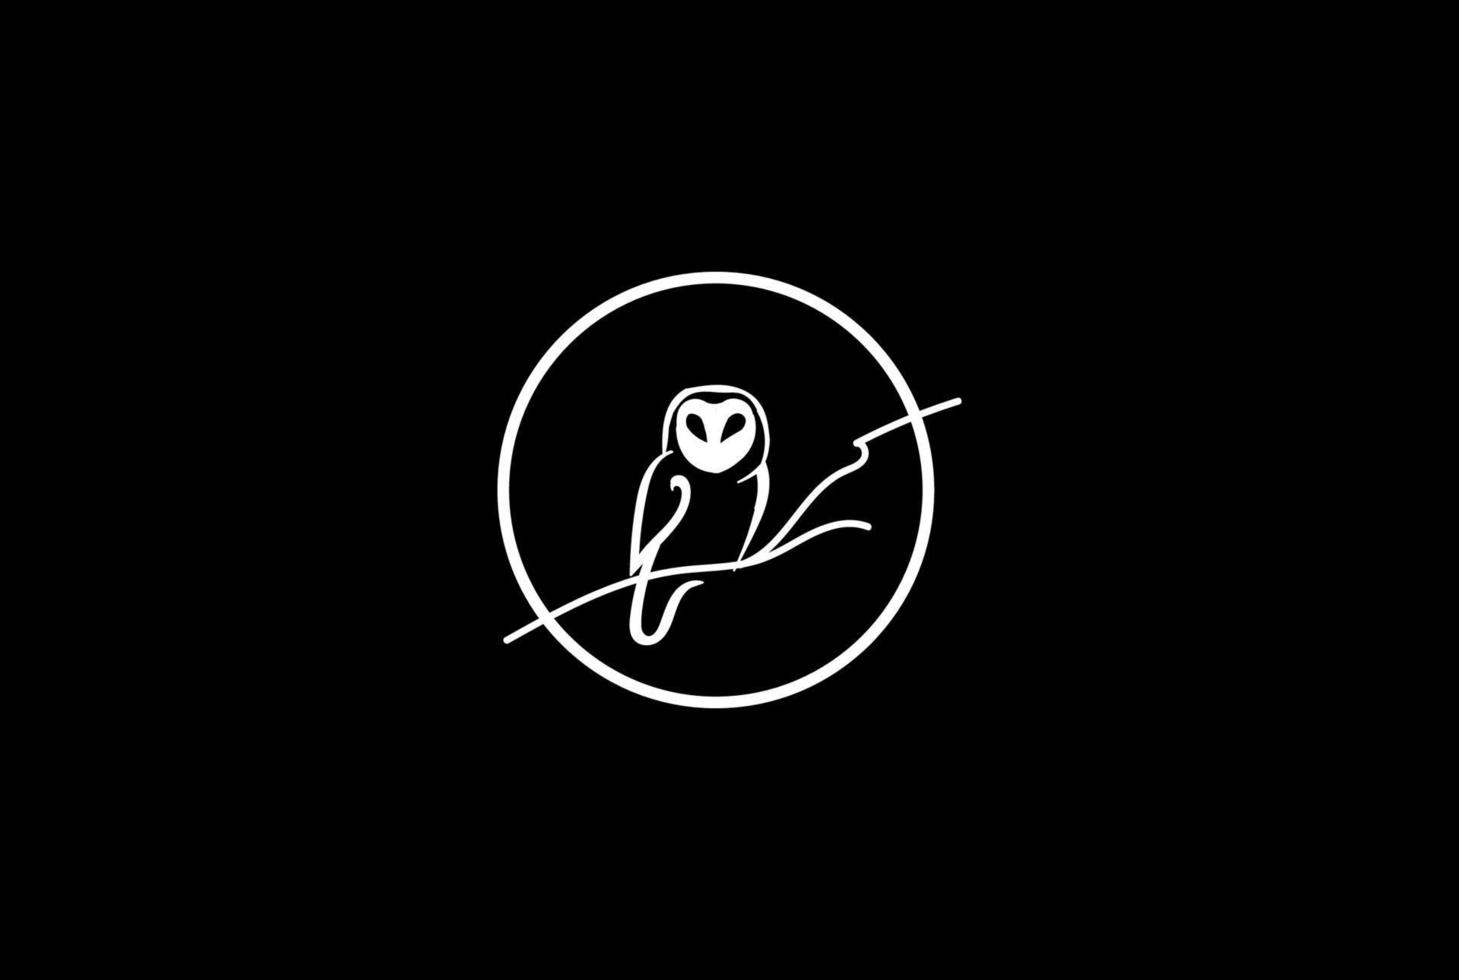 gufo luna notte oscura logo design vector